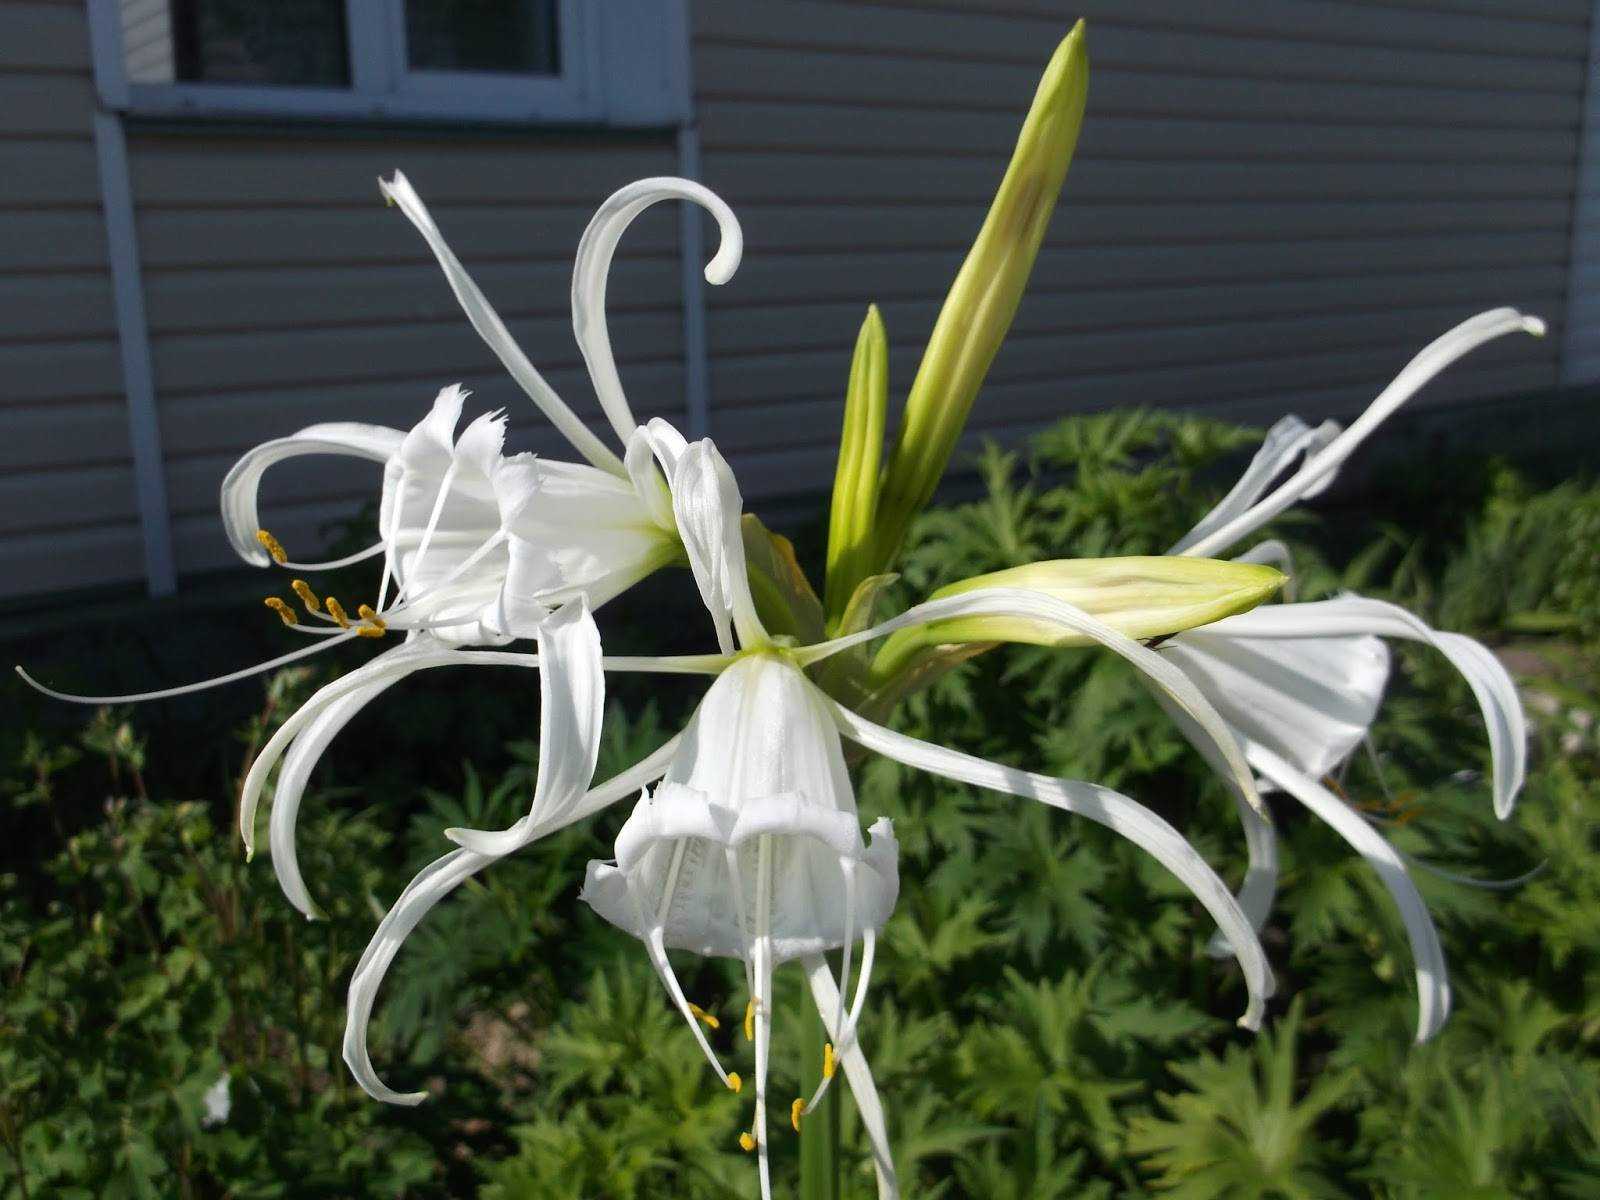 Гименокаллис — как выращивать правильно цветок в домашних условиях и в саду (115 фото + видео)